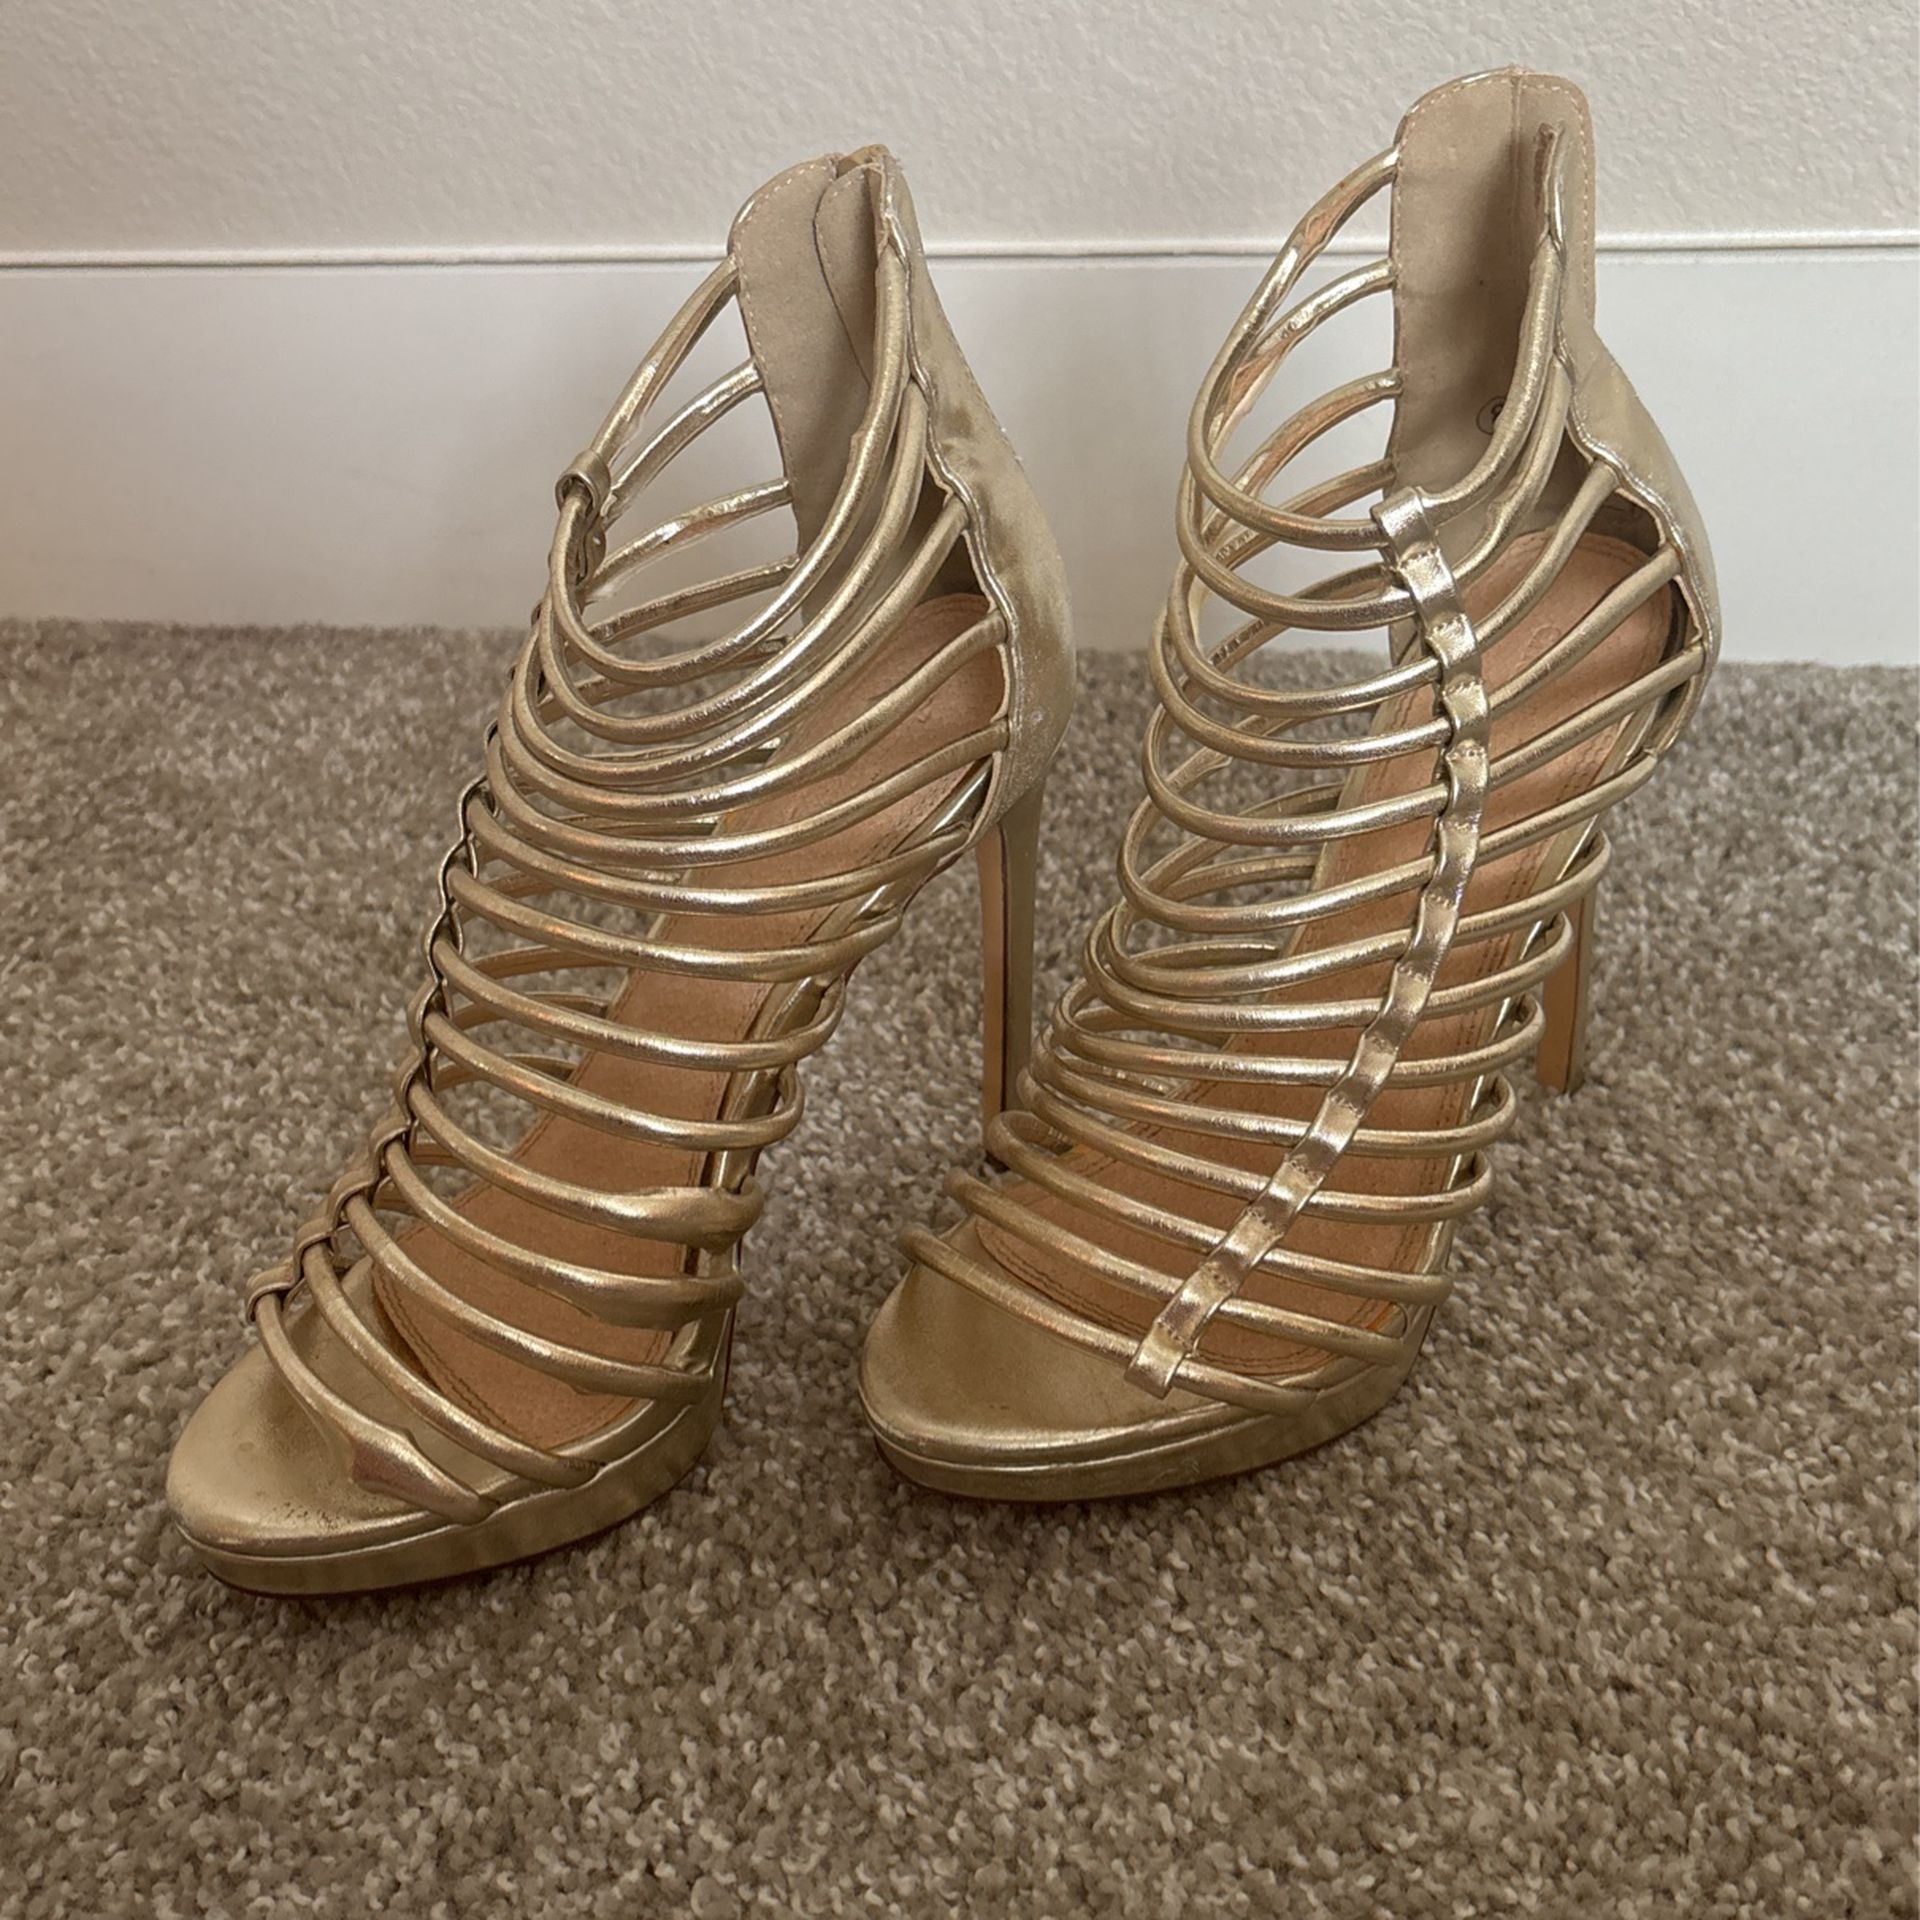 Charloette Russe gold heel (open toe) size 8